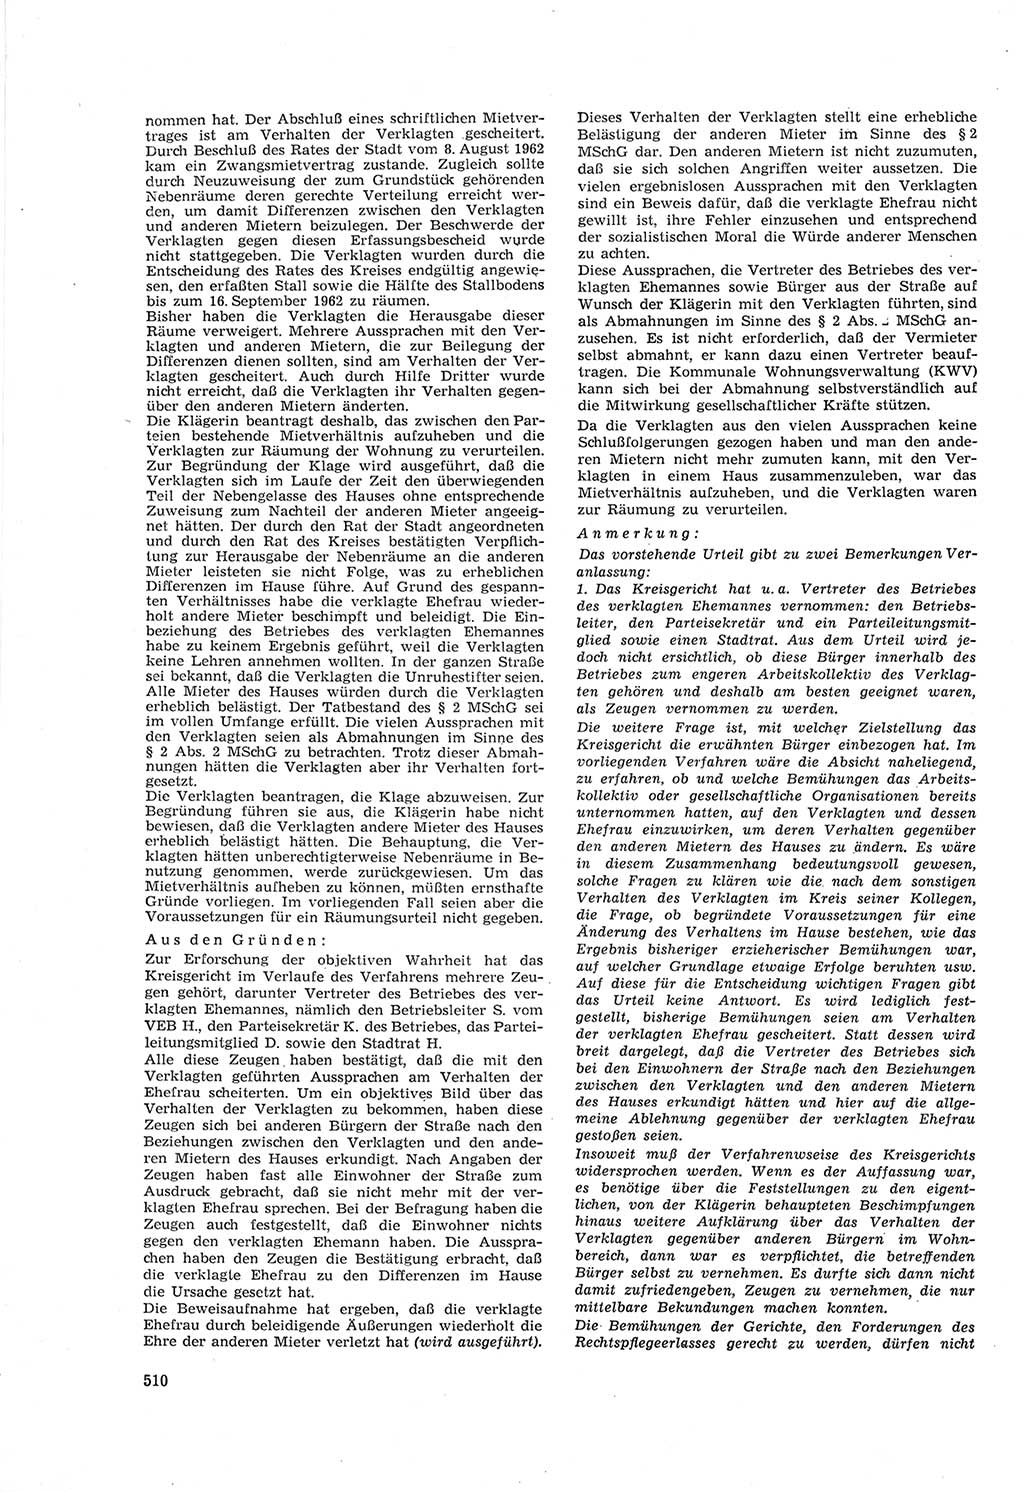 Neue Justiz (NJ), Zeitschrift für Recht und Rechtswissenschaft [Deutsche Demokratische Republik (DDR)], 18. Jahrgang 1964, Seite 510 (NJ DDR 1964, S. 510)